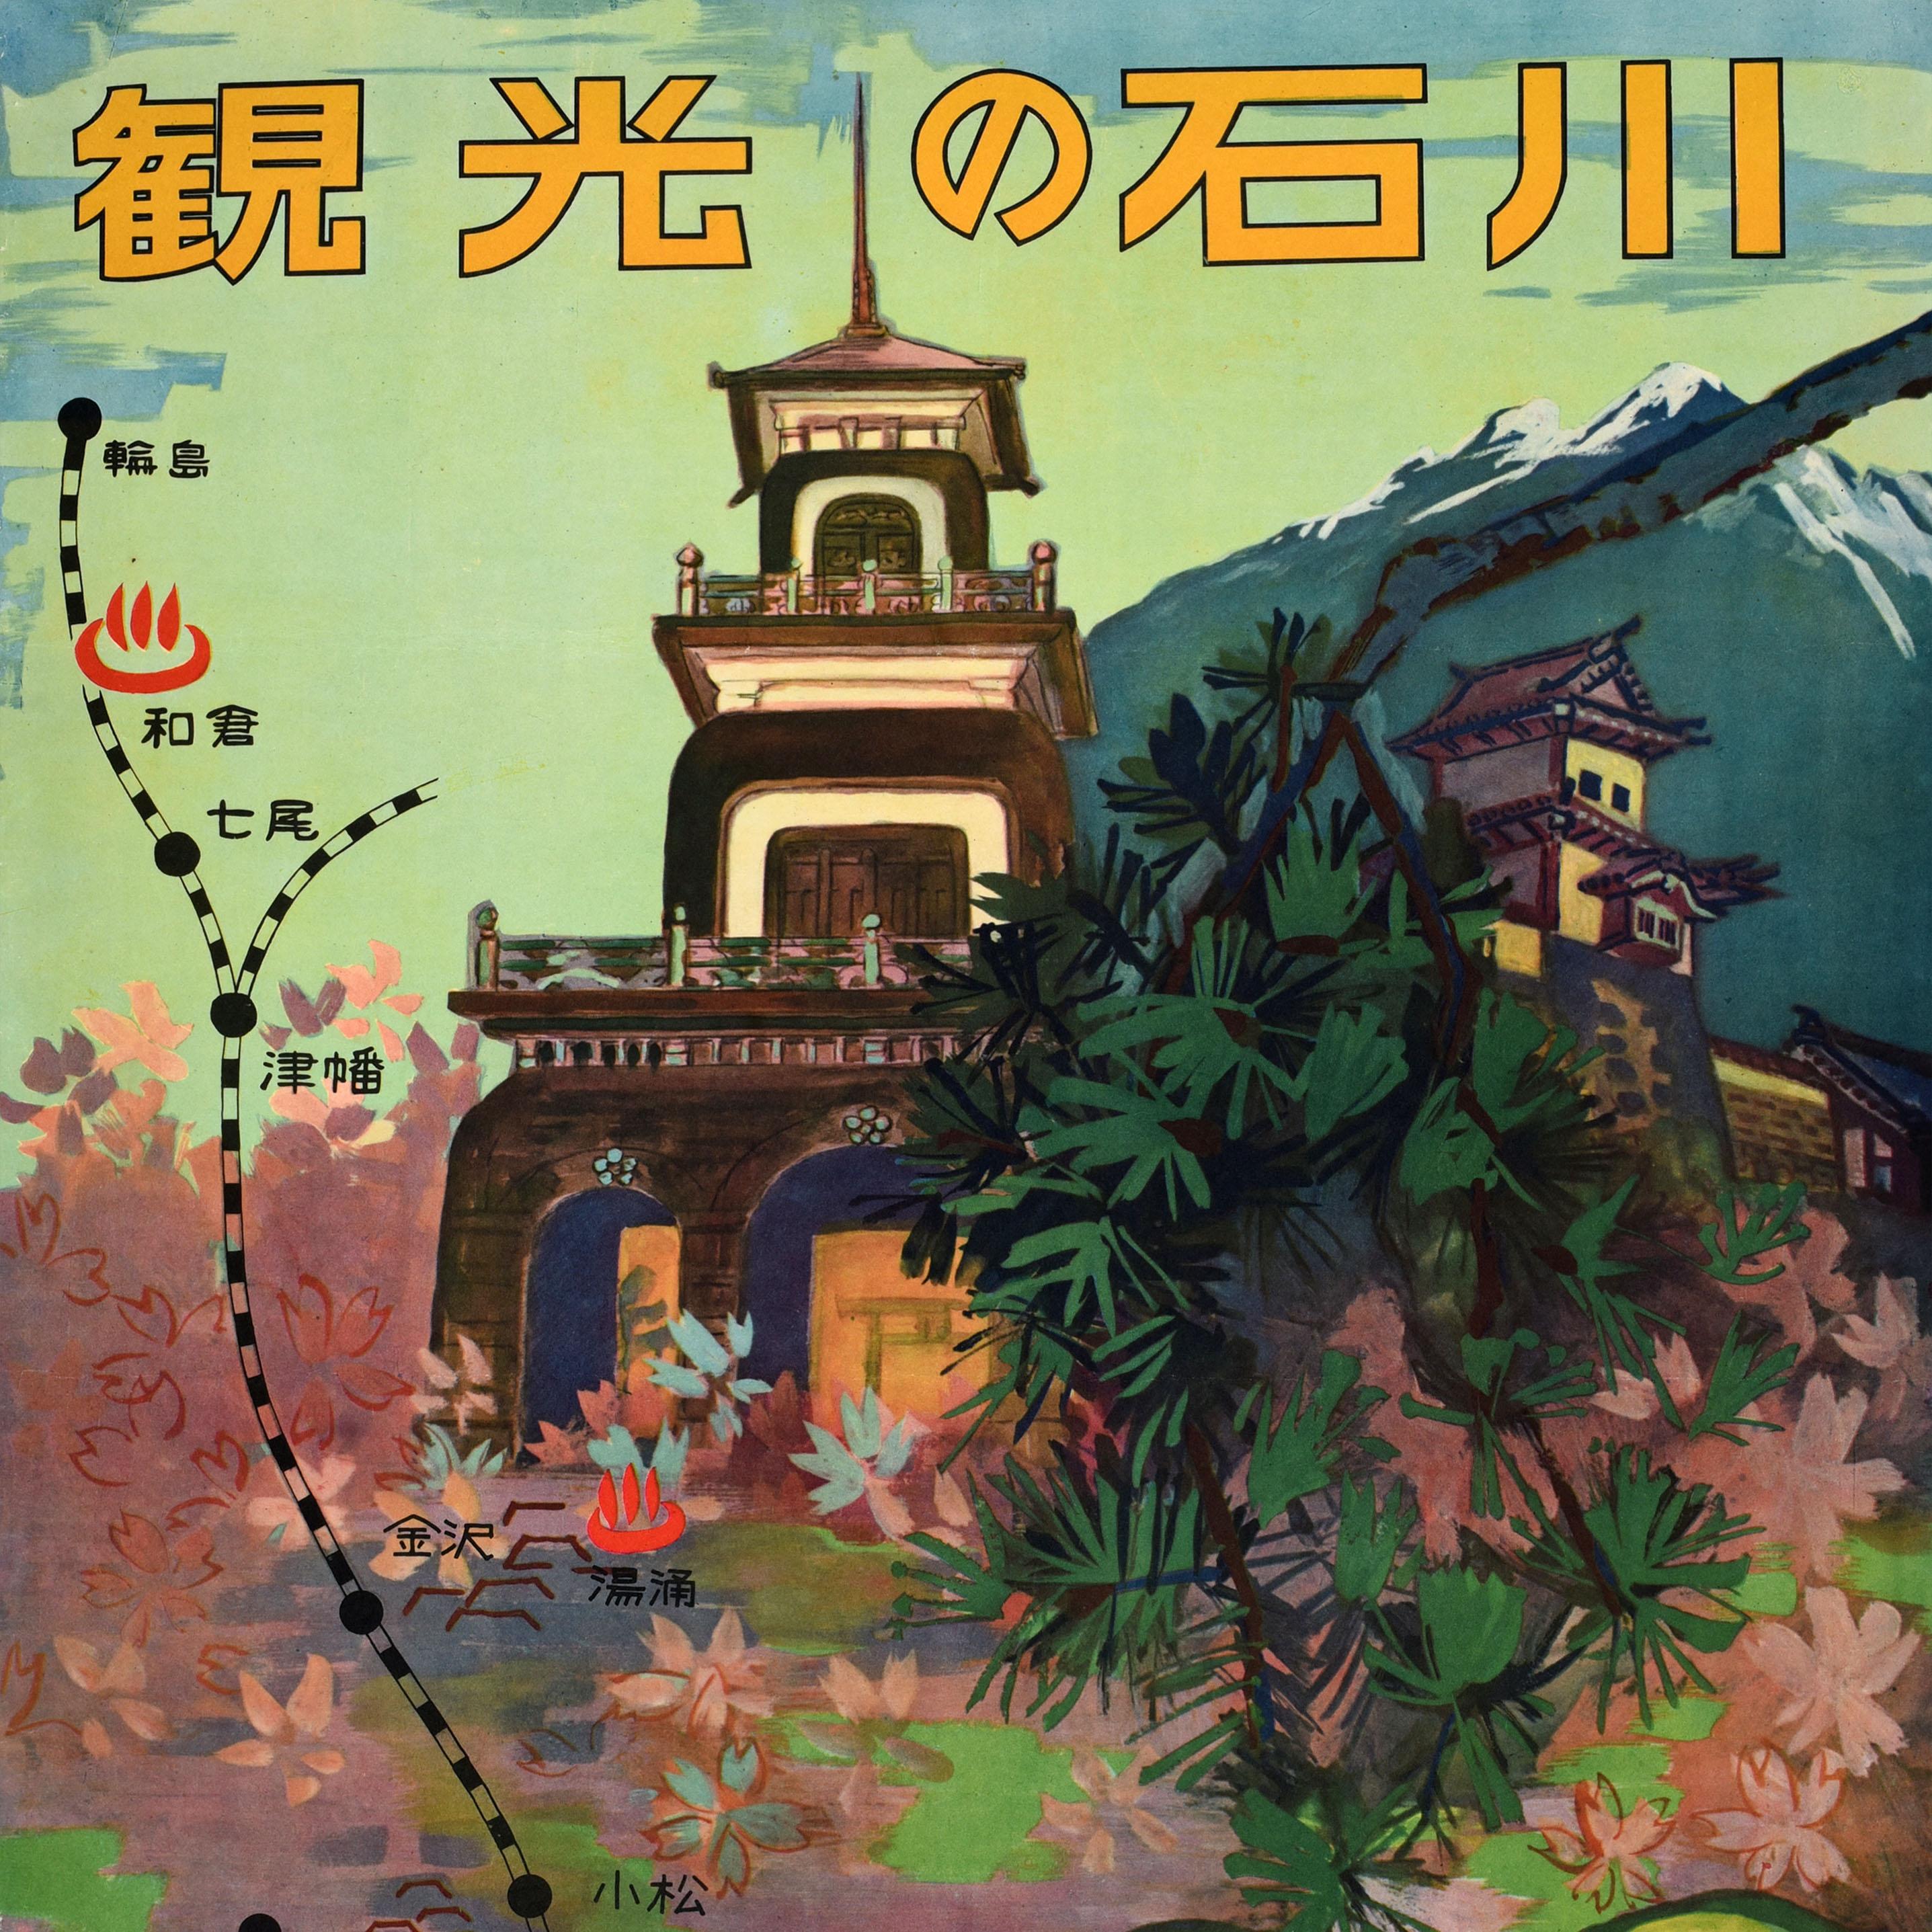 Original Vintage Zugreiseplakat für 石川 Ishikawa auf der japanischen Insel Honshu, herausgegeben vom Tourismusverband der Präfektur Ishikawa und dem Nagoya Railway Bureau, mit einer malerischen Darstellung der historischen Burg Kanazawa und des